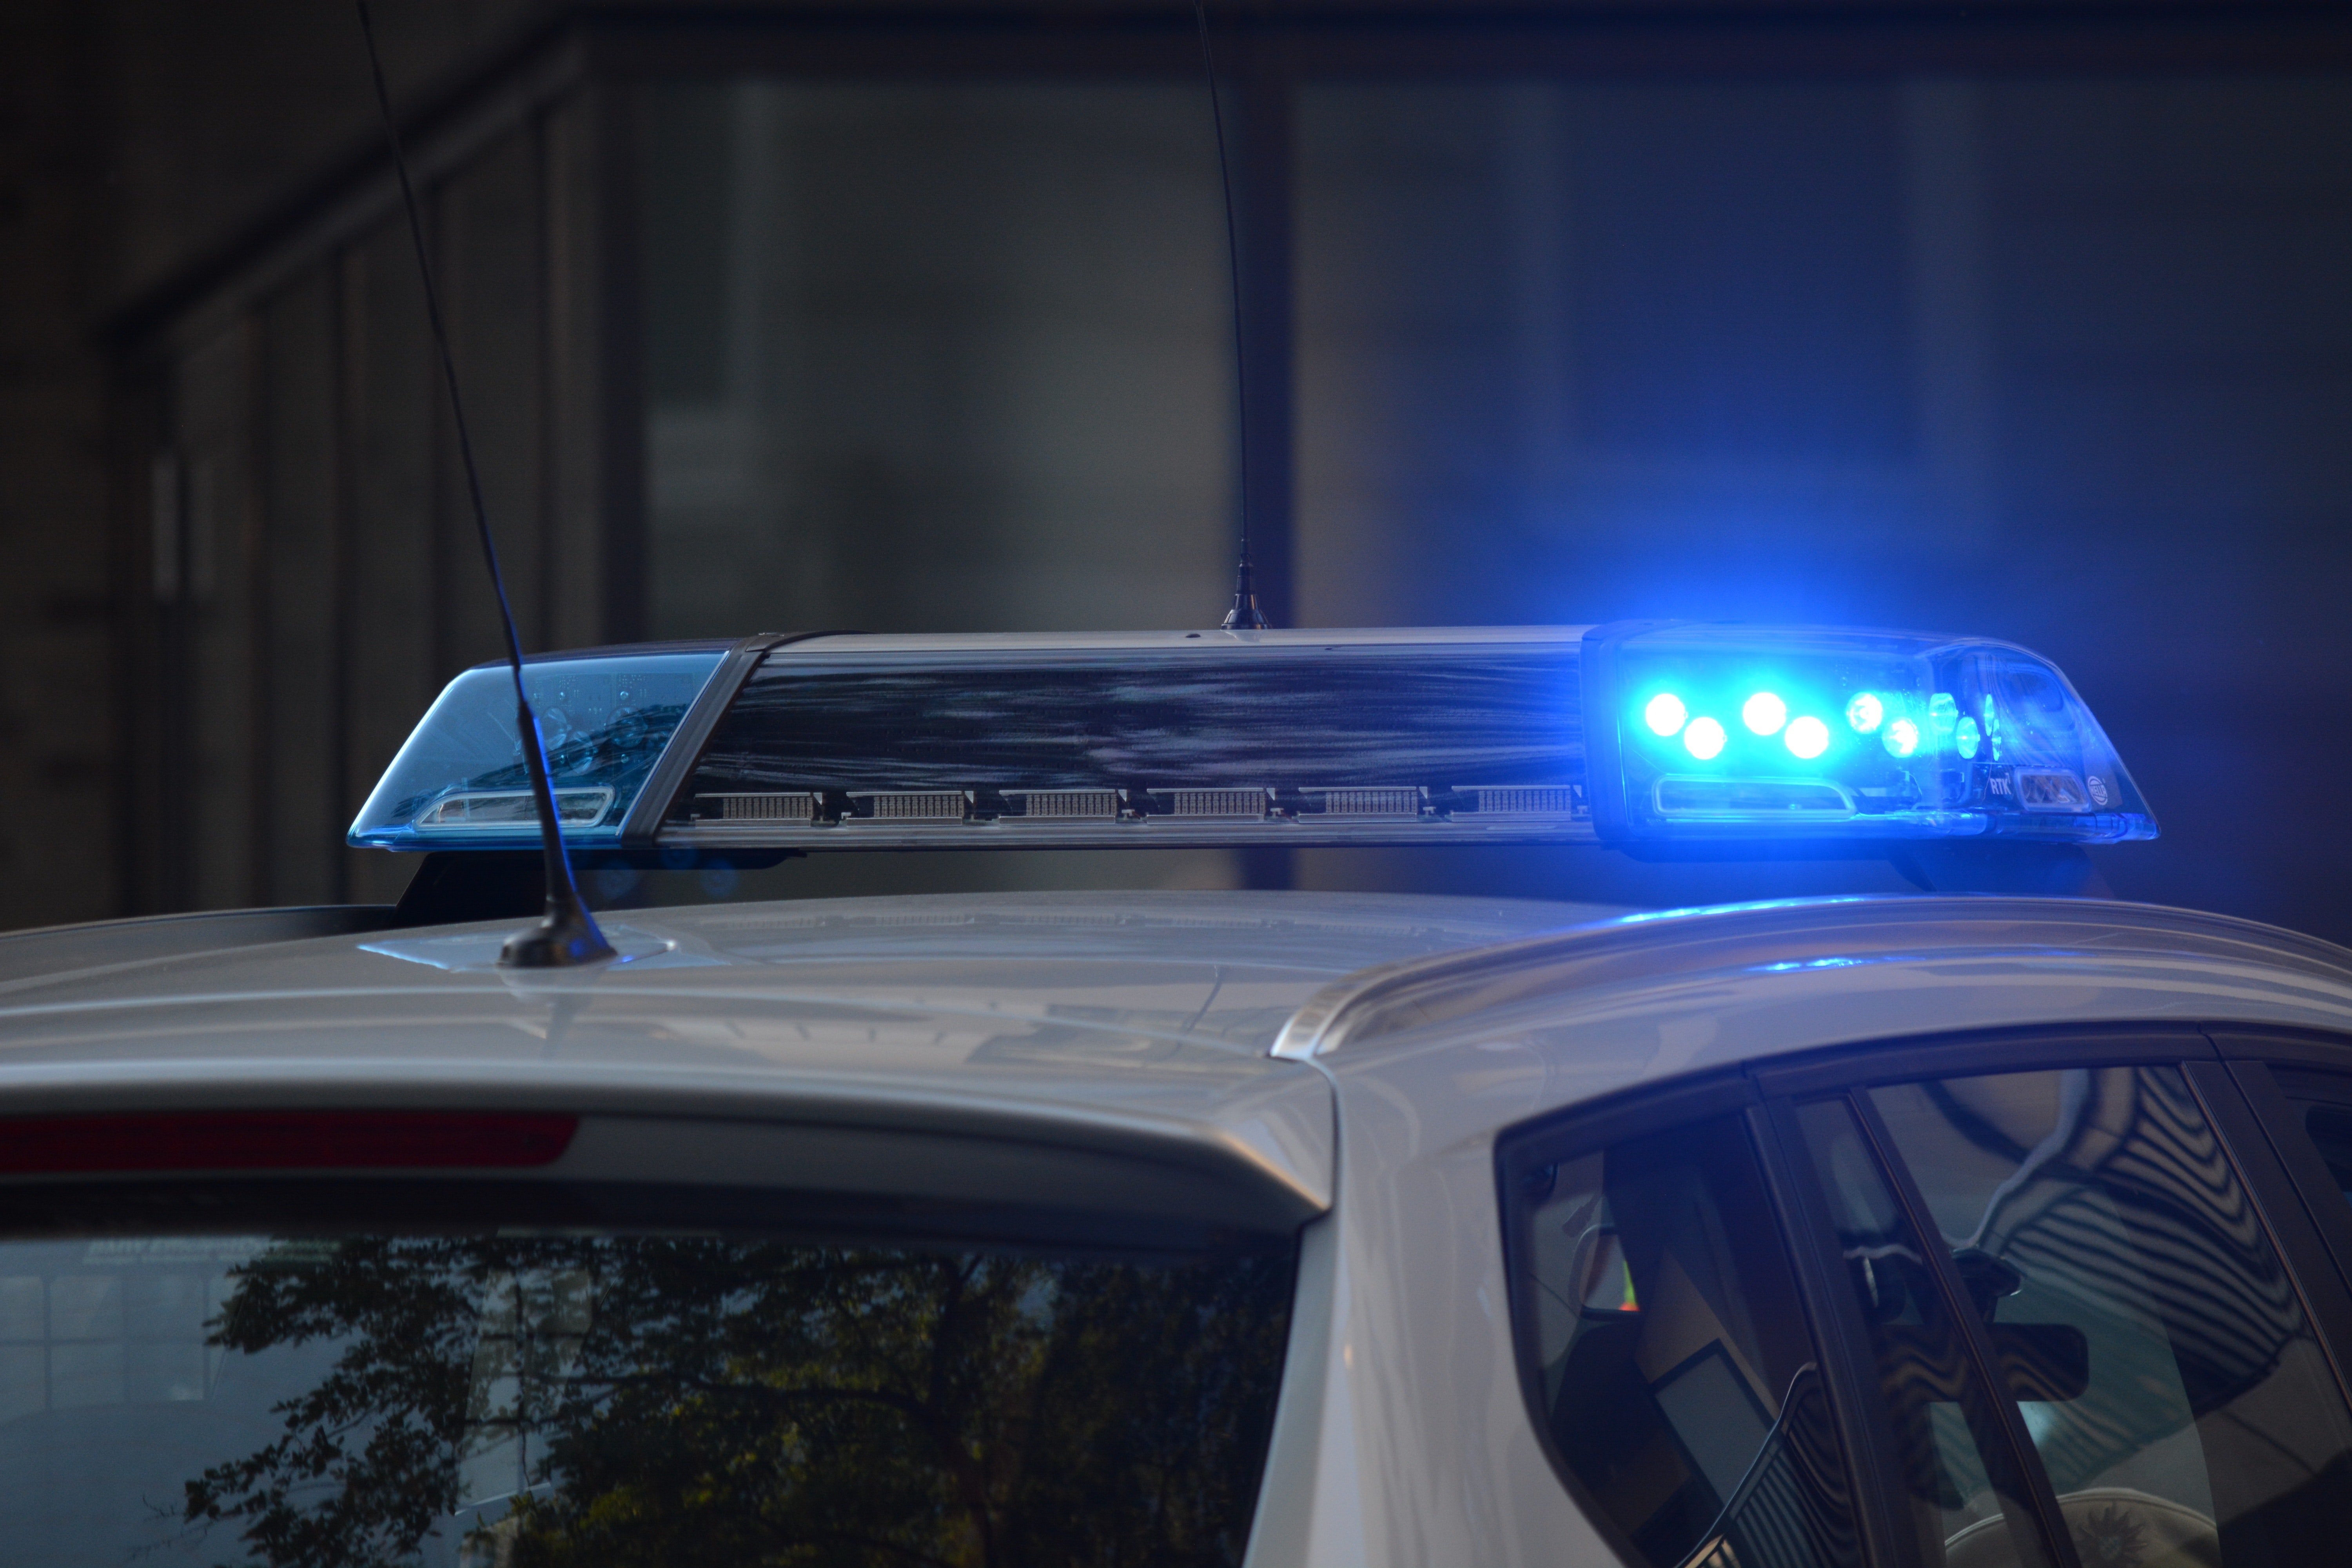 Ein Polizist traf am Tatort ein, um einen Gesundheitscheck durchzuführen. | Quelle: Pexels